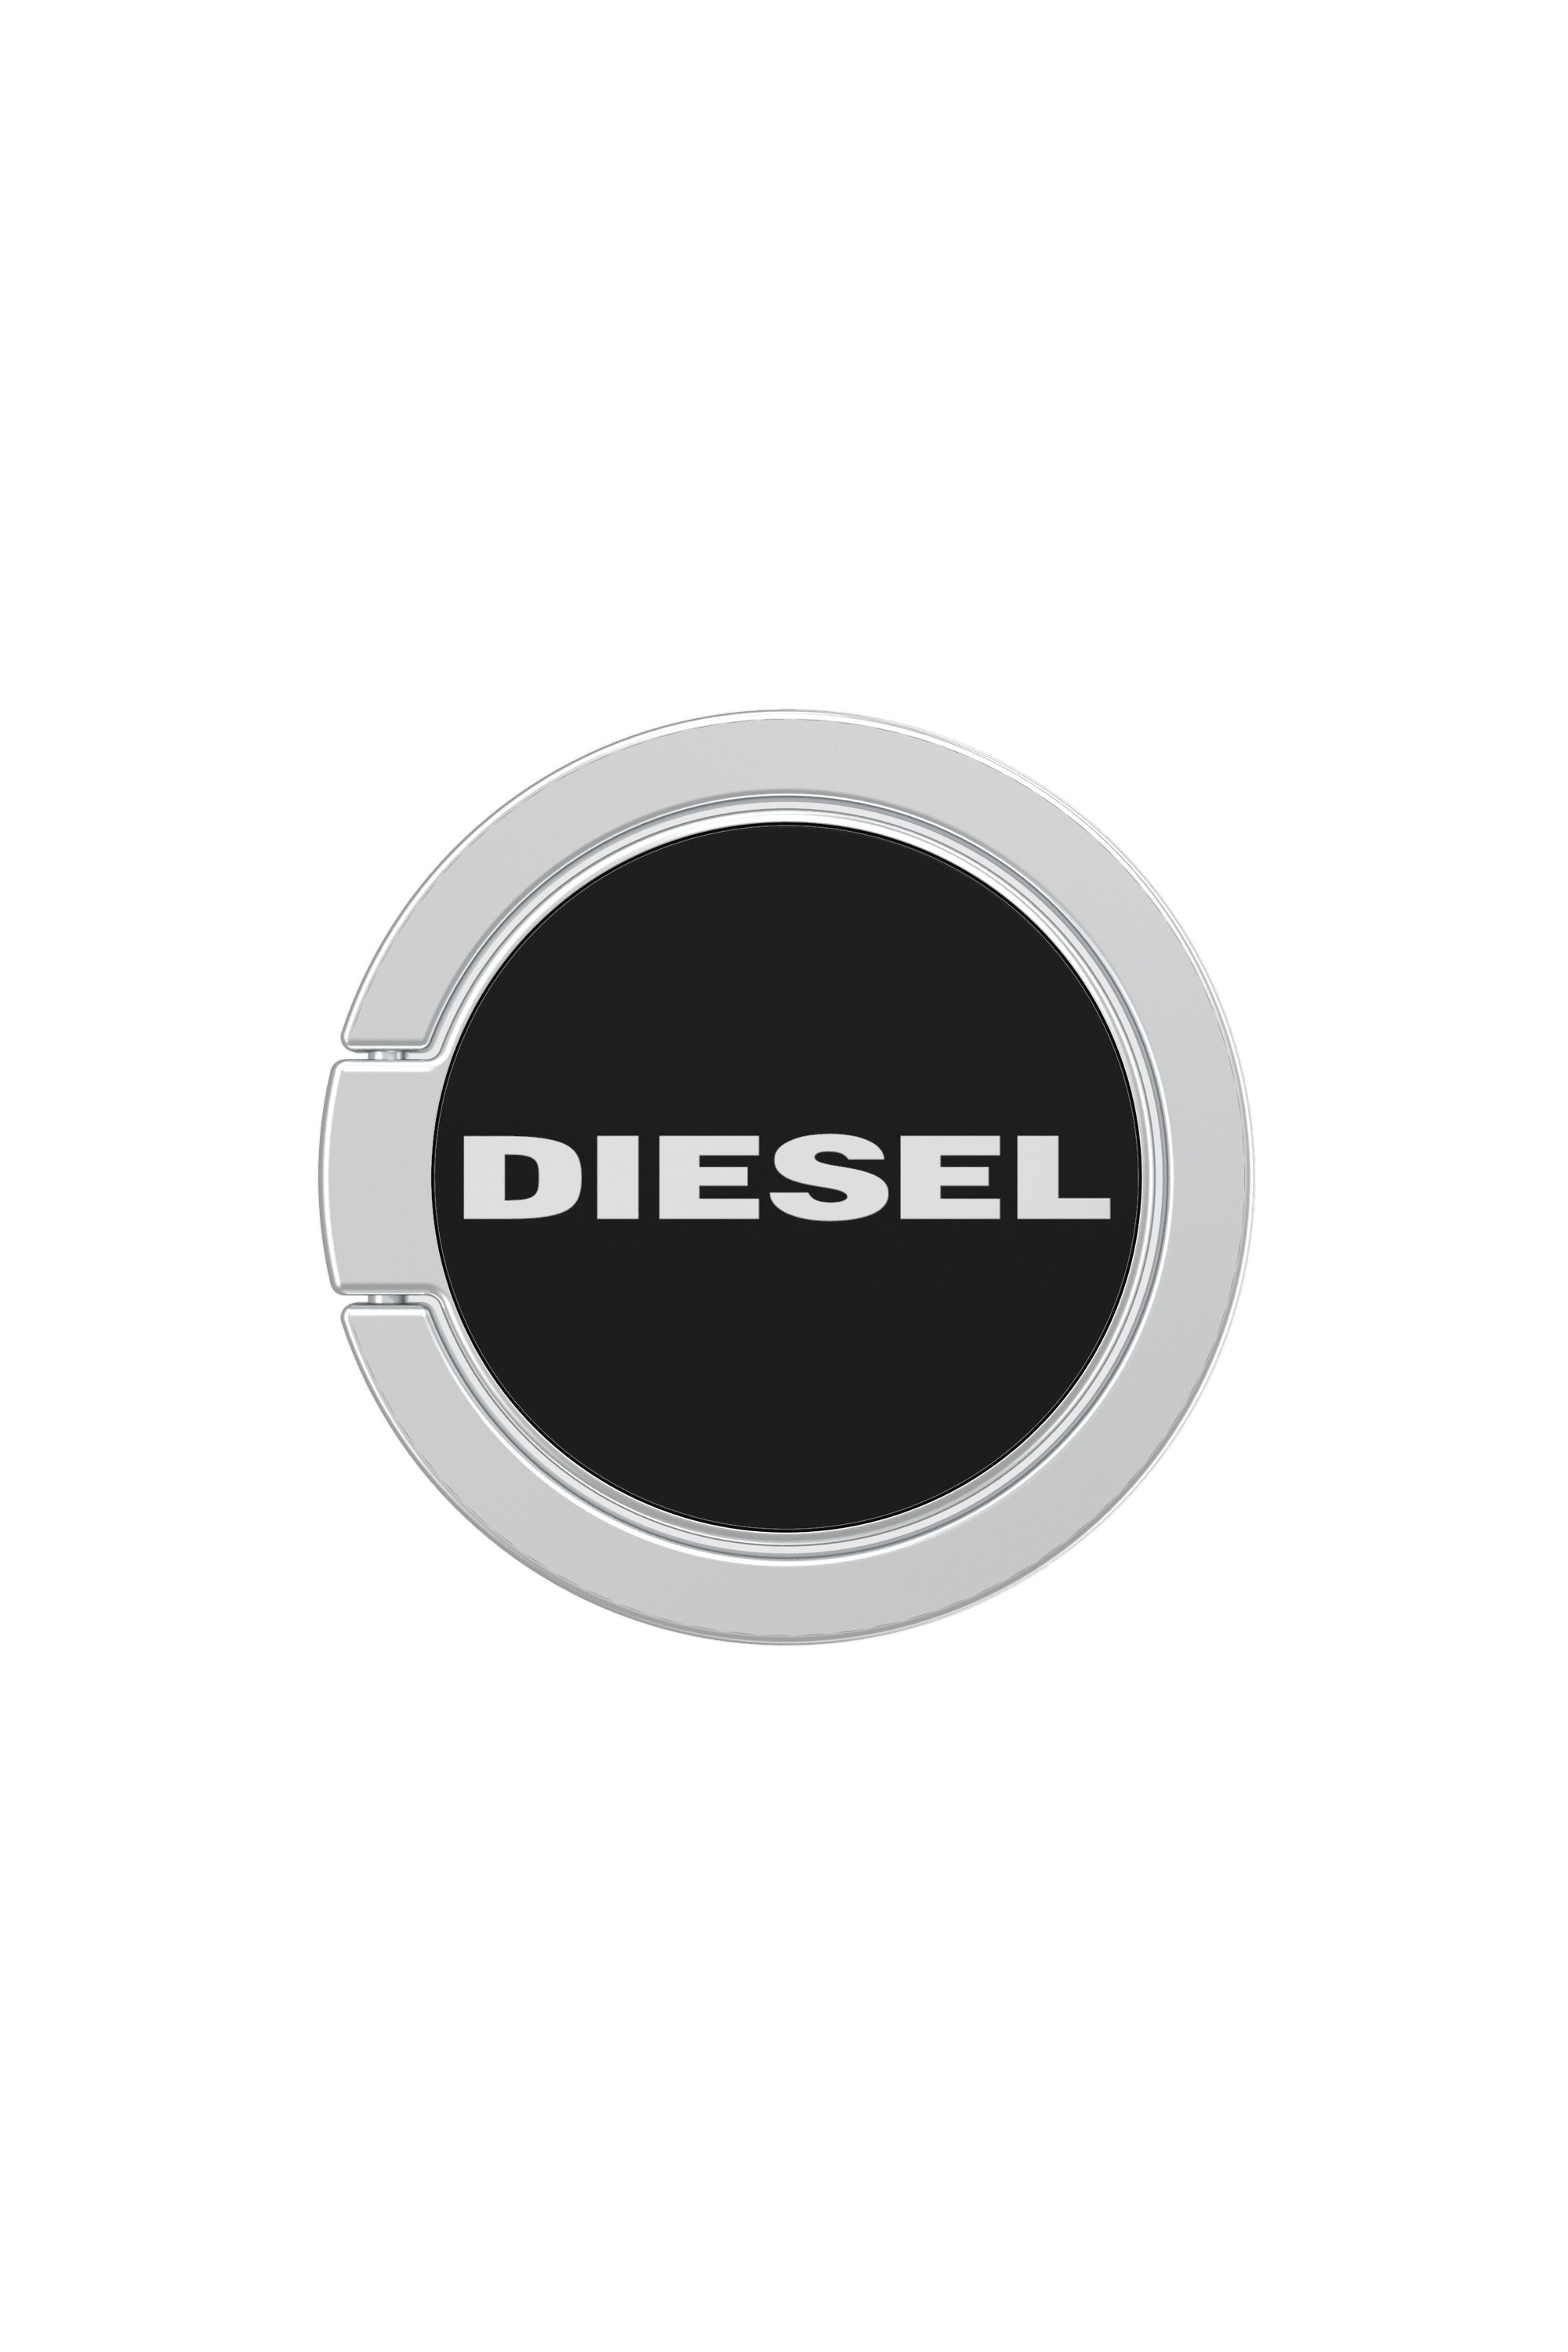 Diesel - 41919, Negro - Image 1